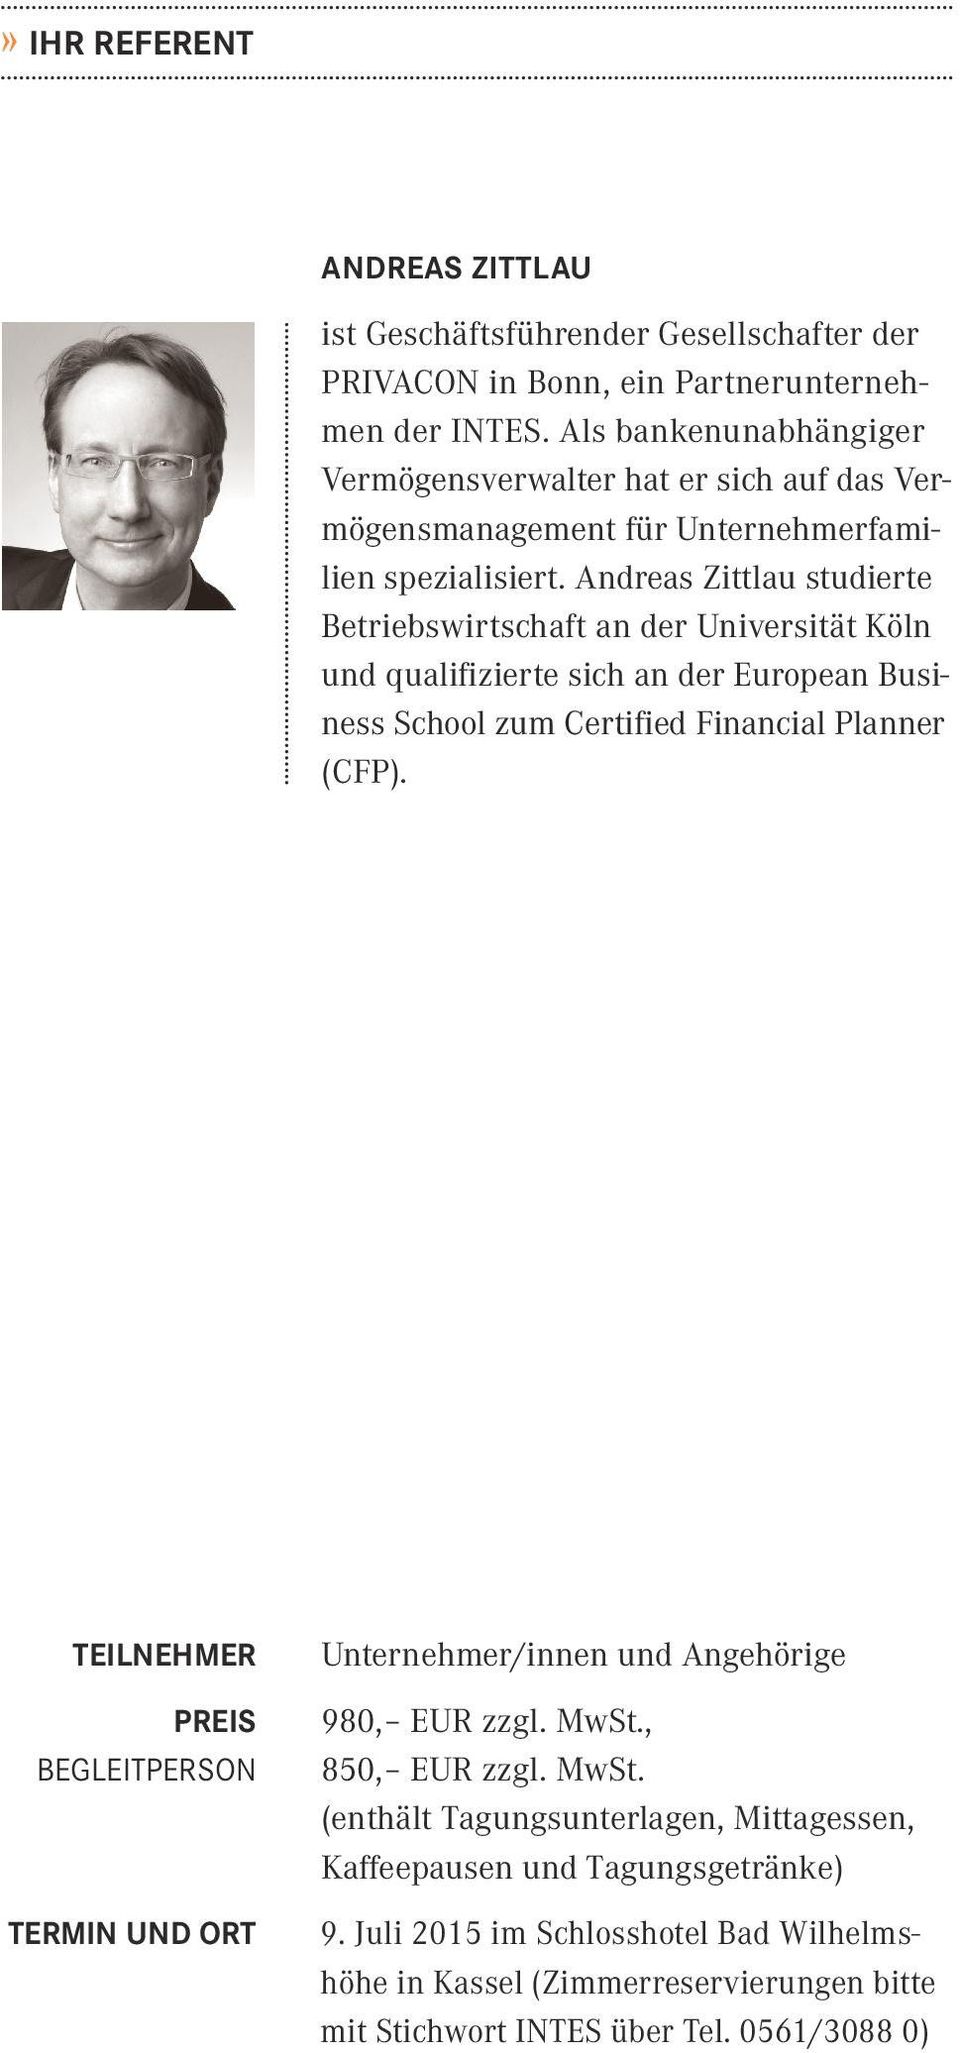 Andreas Zittlau studierte Betriebswirtschaft an der Universität Köln und qualifizierte sich an der European Business School zum Certified Financial Planner (CFP).